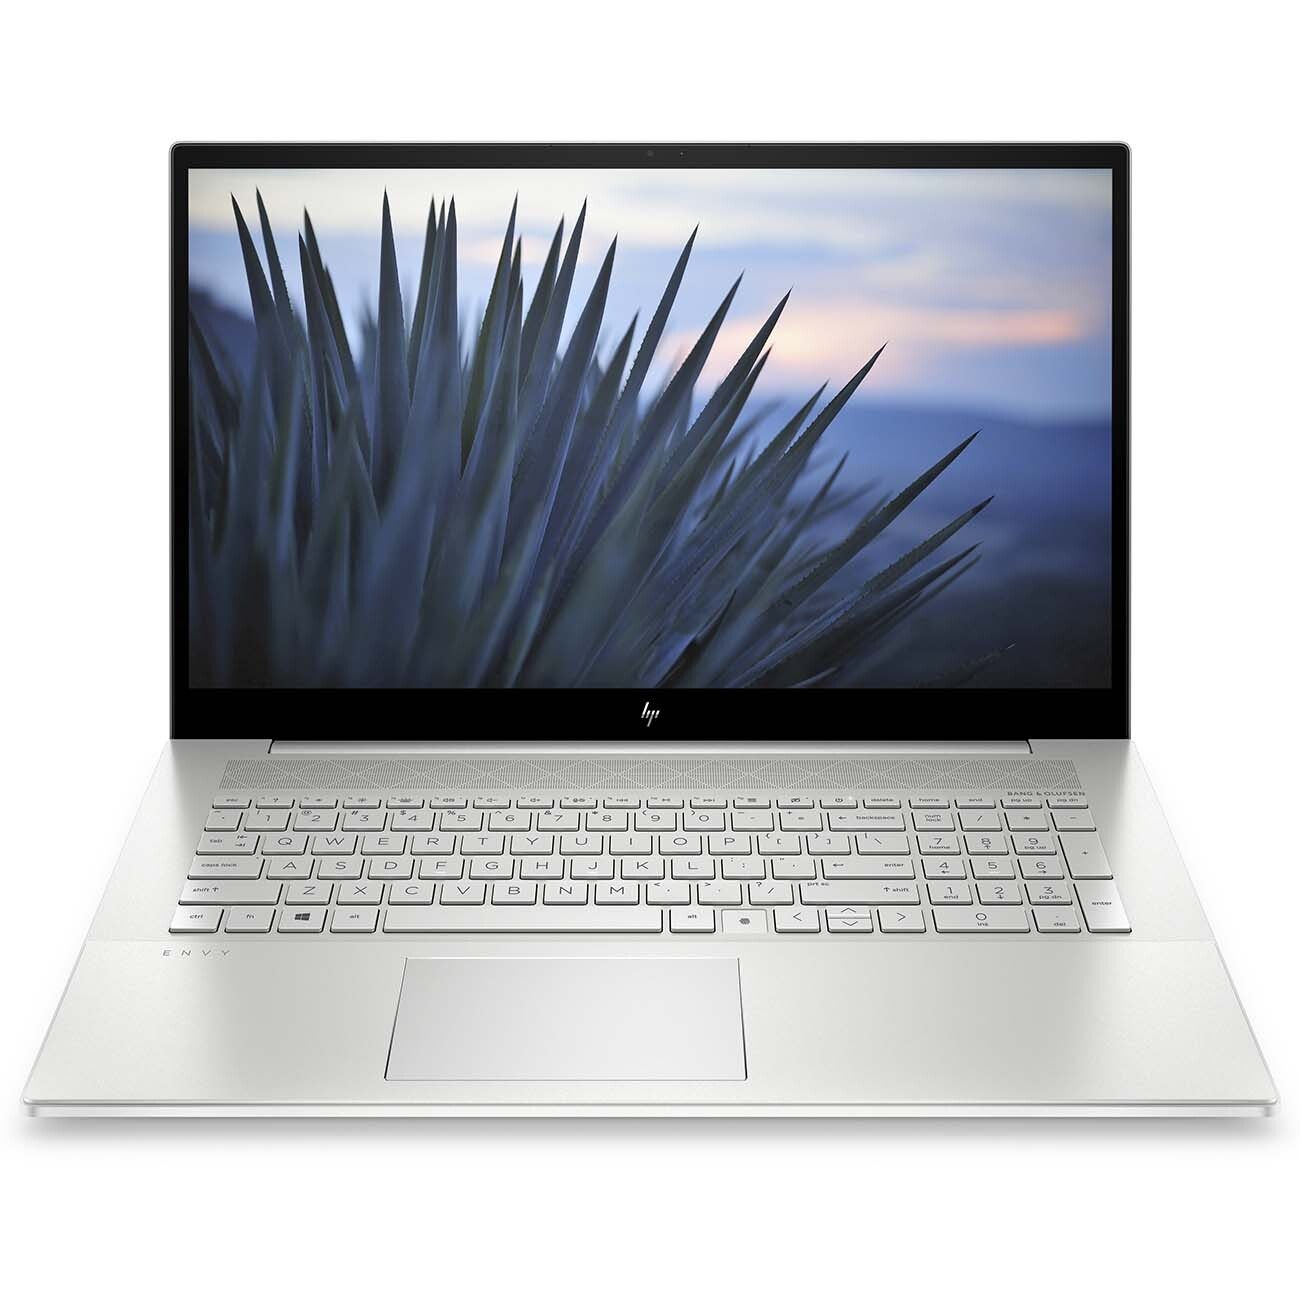 Ноутбук Hp Envy 17-J018sr Цена